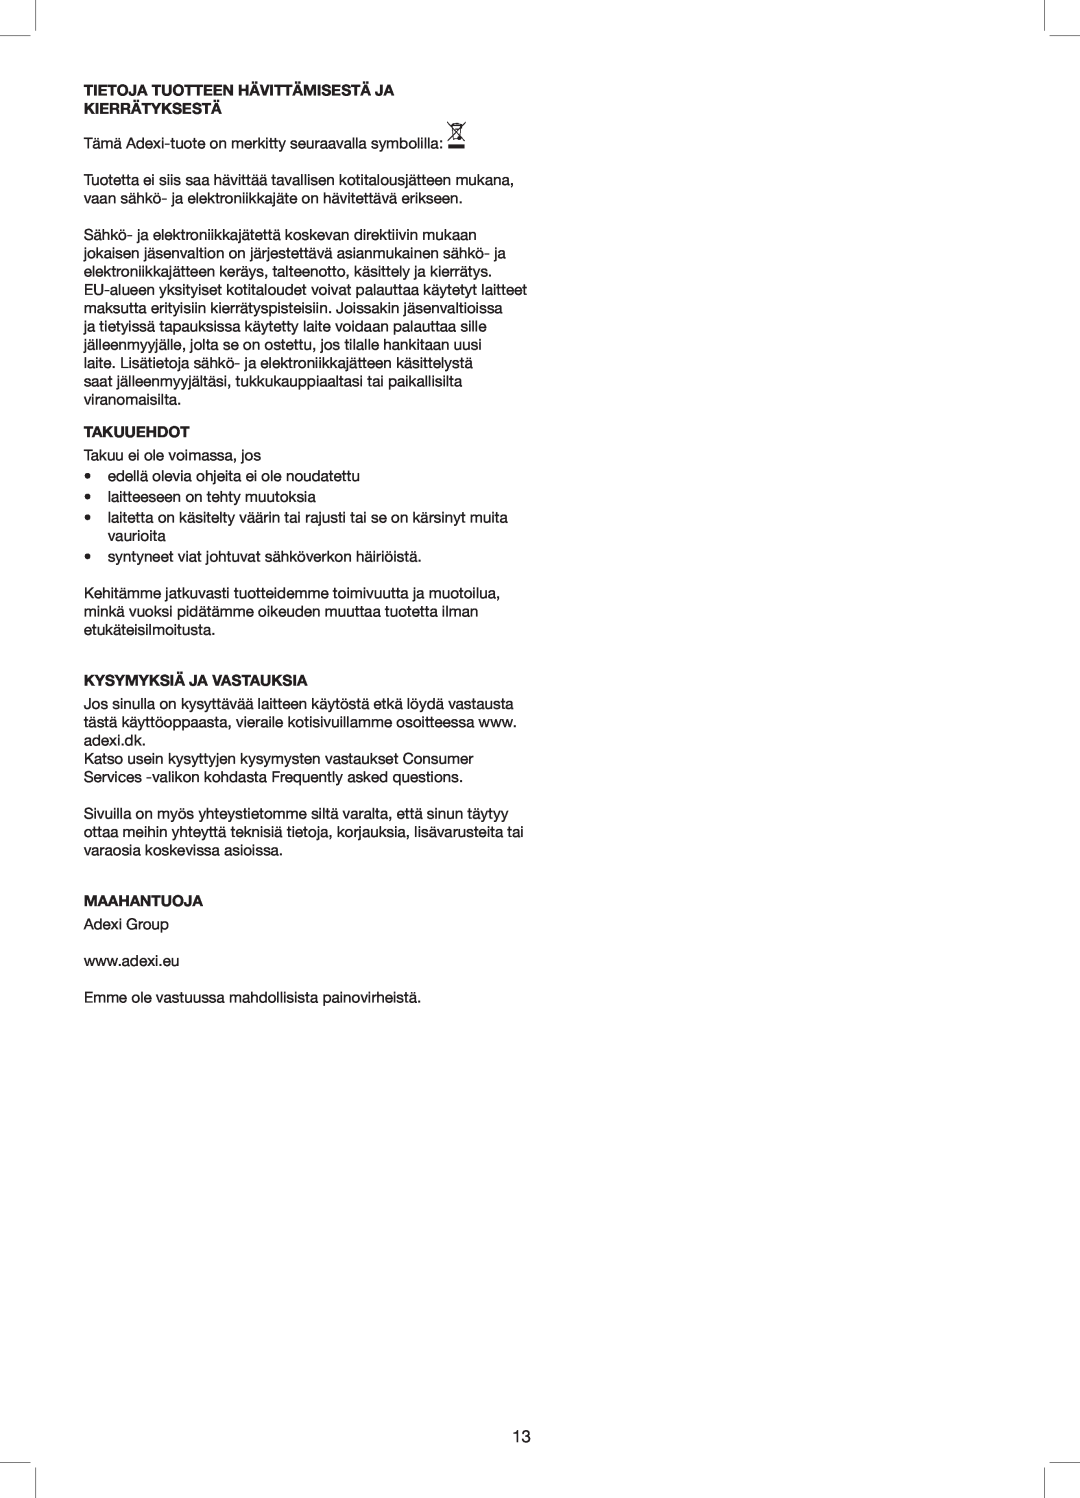 Exido 240-110 manual Tietoja Tuotteen Hävittämisestä Ja Kierrätyksestä, Takuuehdot, Kysymyksiä Ja Vastauksia, Maahantuoja 